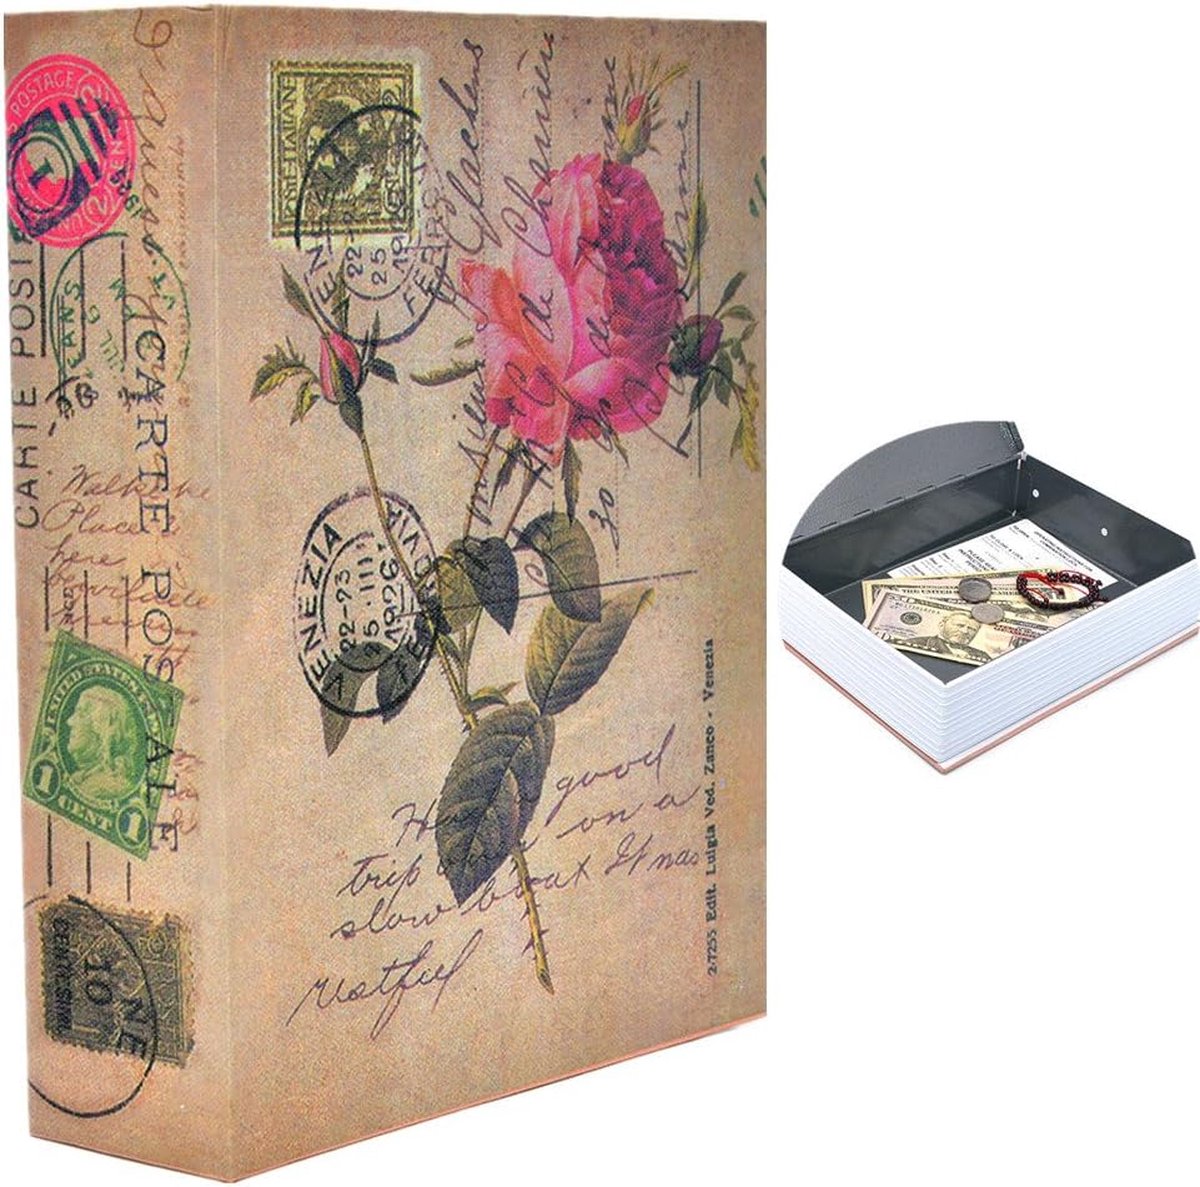 Geld-veilige boeken Draagbaar verborgen veilig boek met combinatieslot voor veilige geldopslag Maat L: 26,5 * 19,7 * 6,5 cm - 10,5 * 7,8 * 2,6 inch